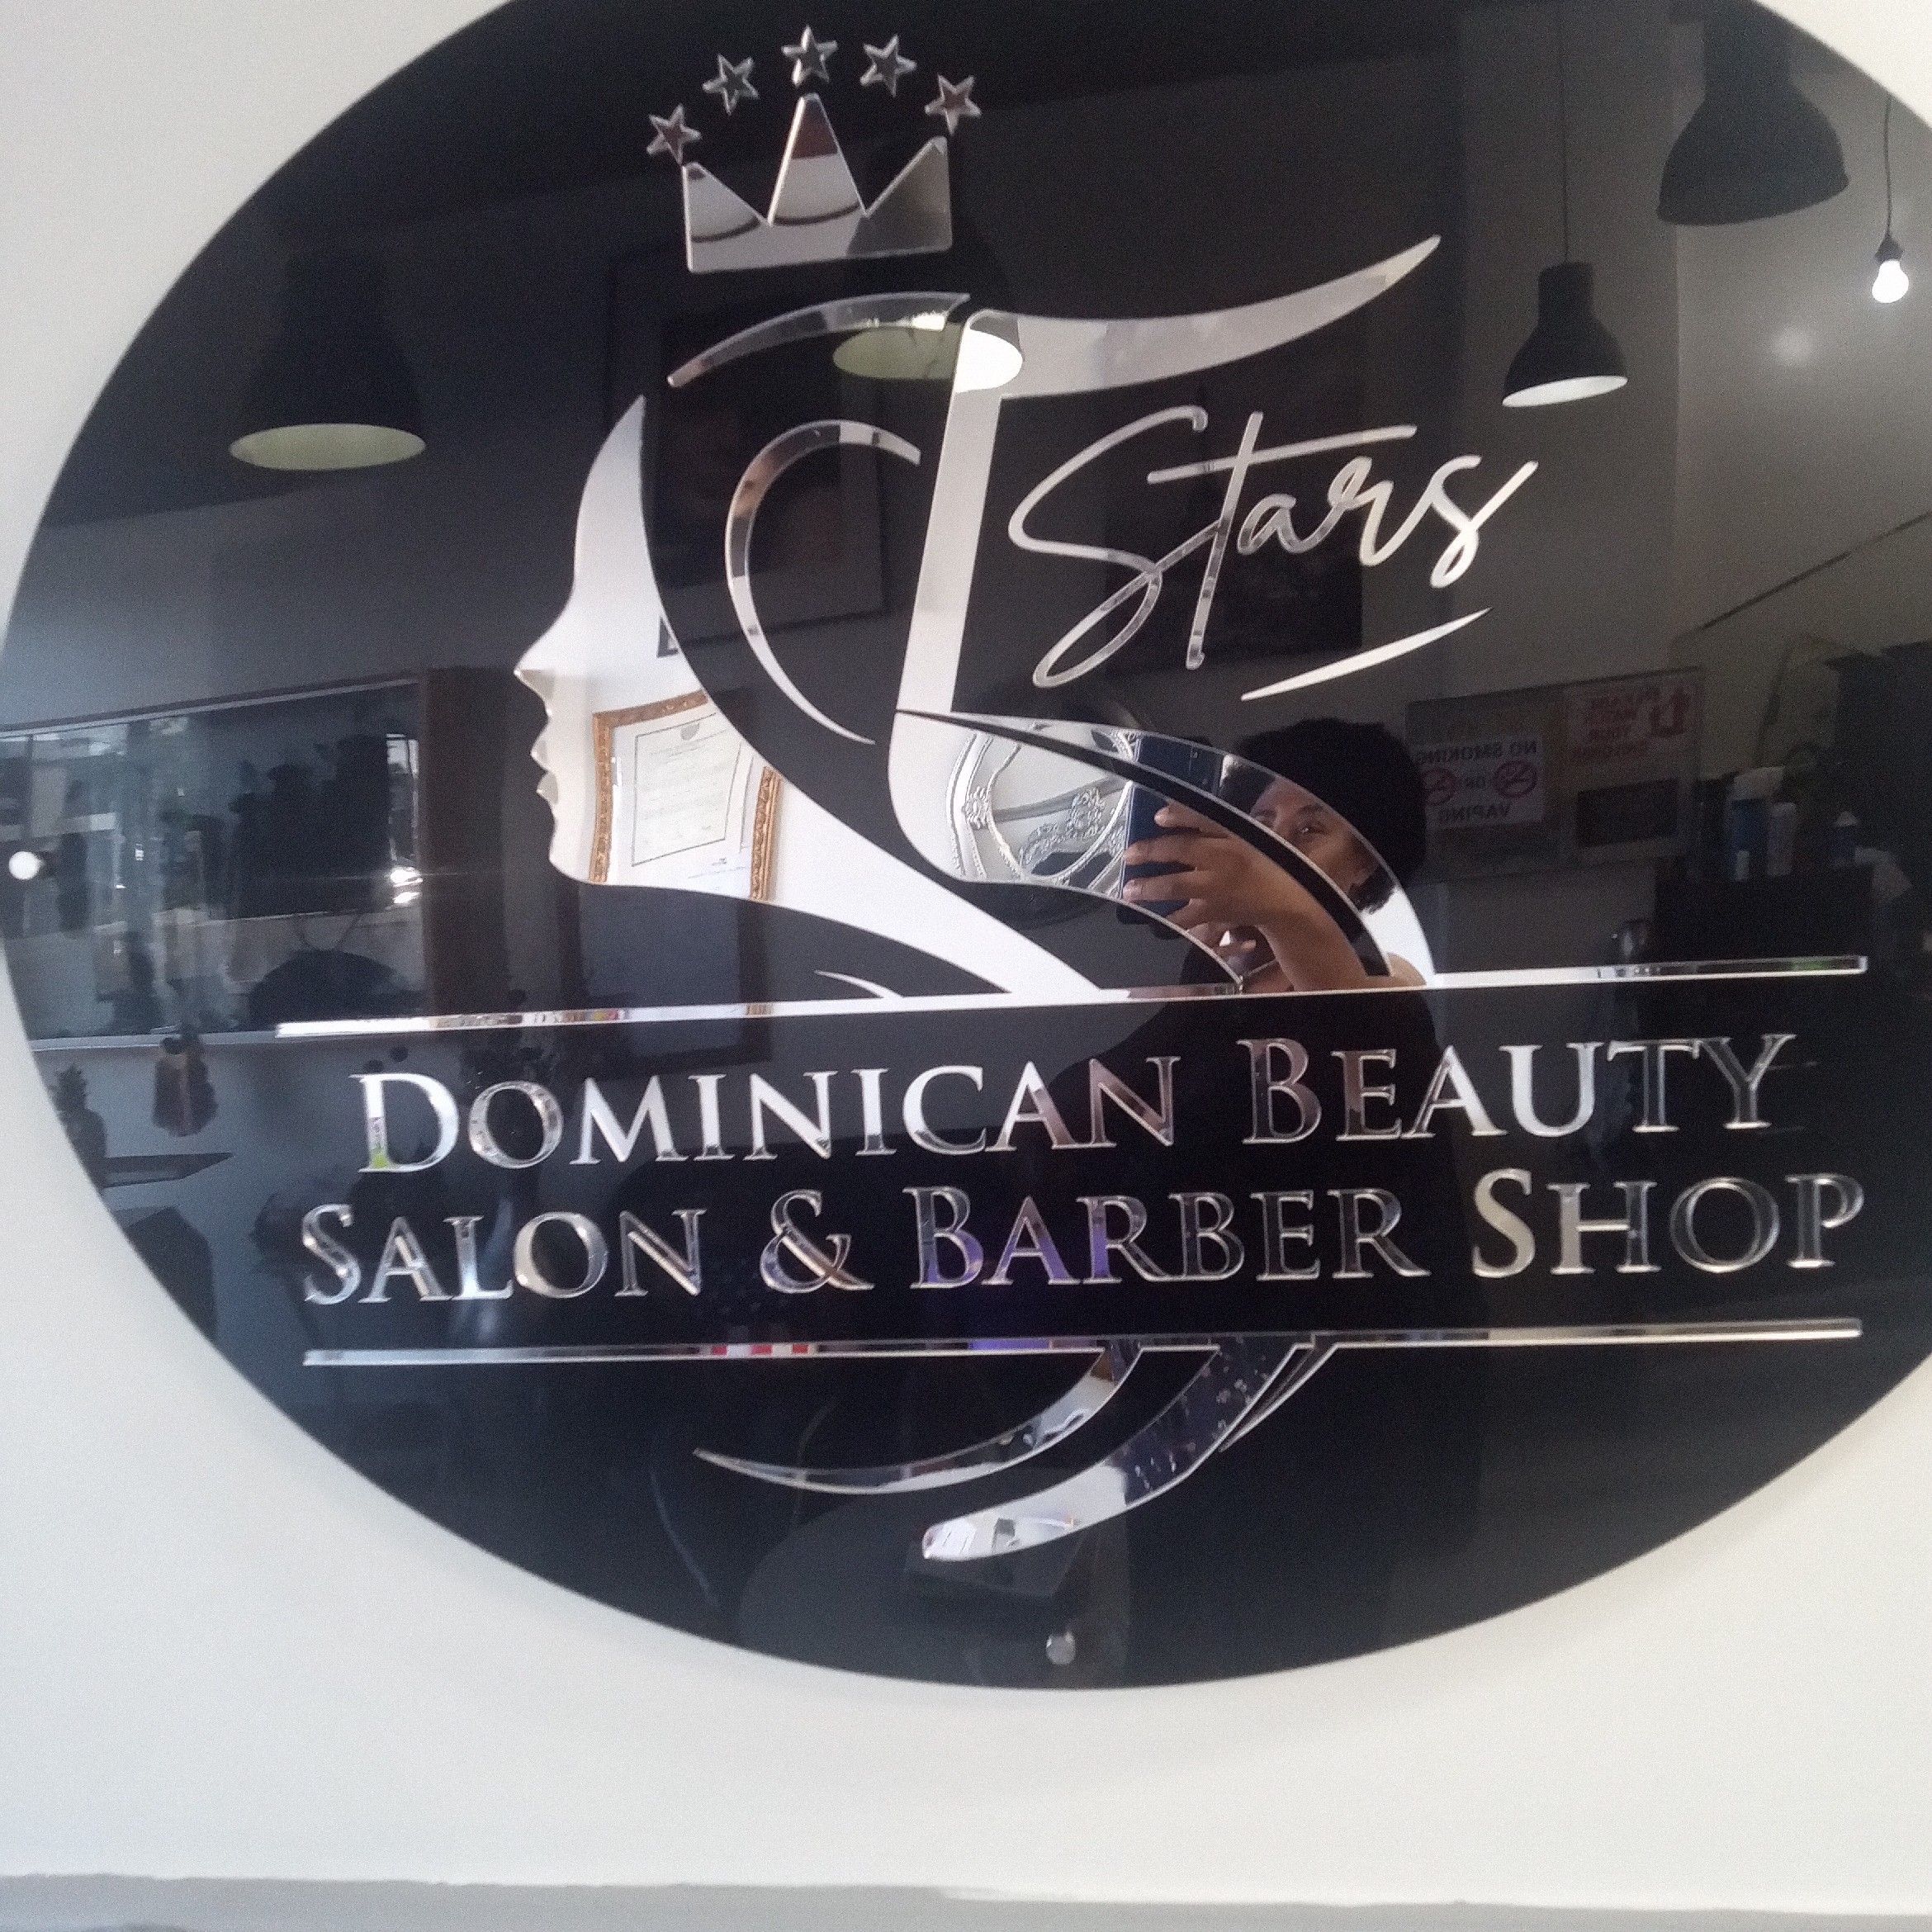 5 Stars Dominican Beauty Salon & Barber Shop, 631 Ne 125 Th, North Miami, 33162